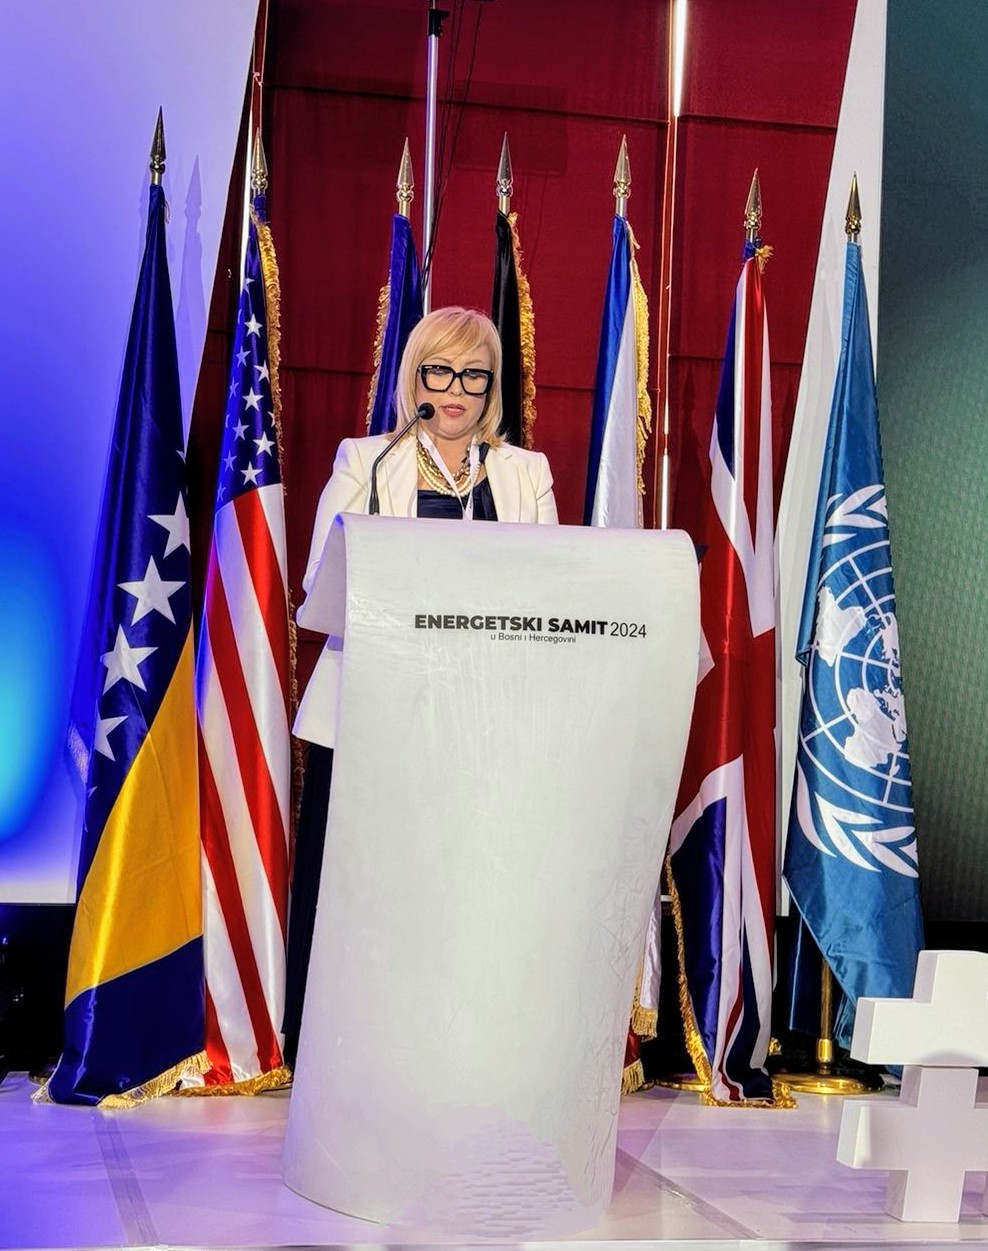 Picture for Gđa Ljiljana Lovrić, zamjenica ministra vanjske trgovine i ekonomskih odnosa Bosne i Hercegovine, otvorila Energetski samit 2024 u Bosni i Hercegovini (24. – 26. travnja 2024 u Neumu)